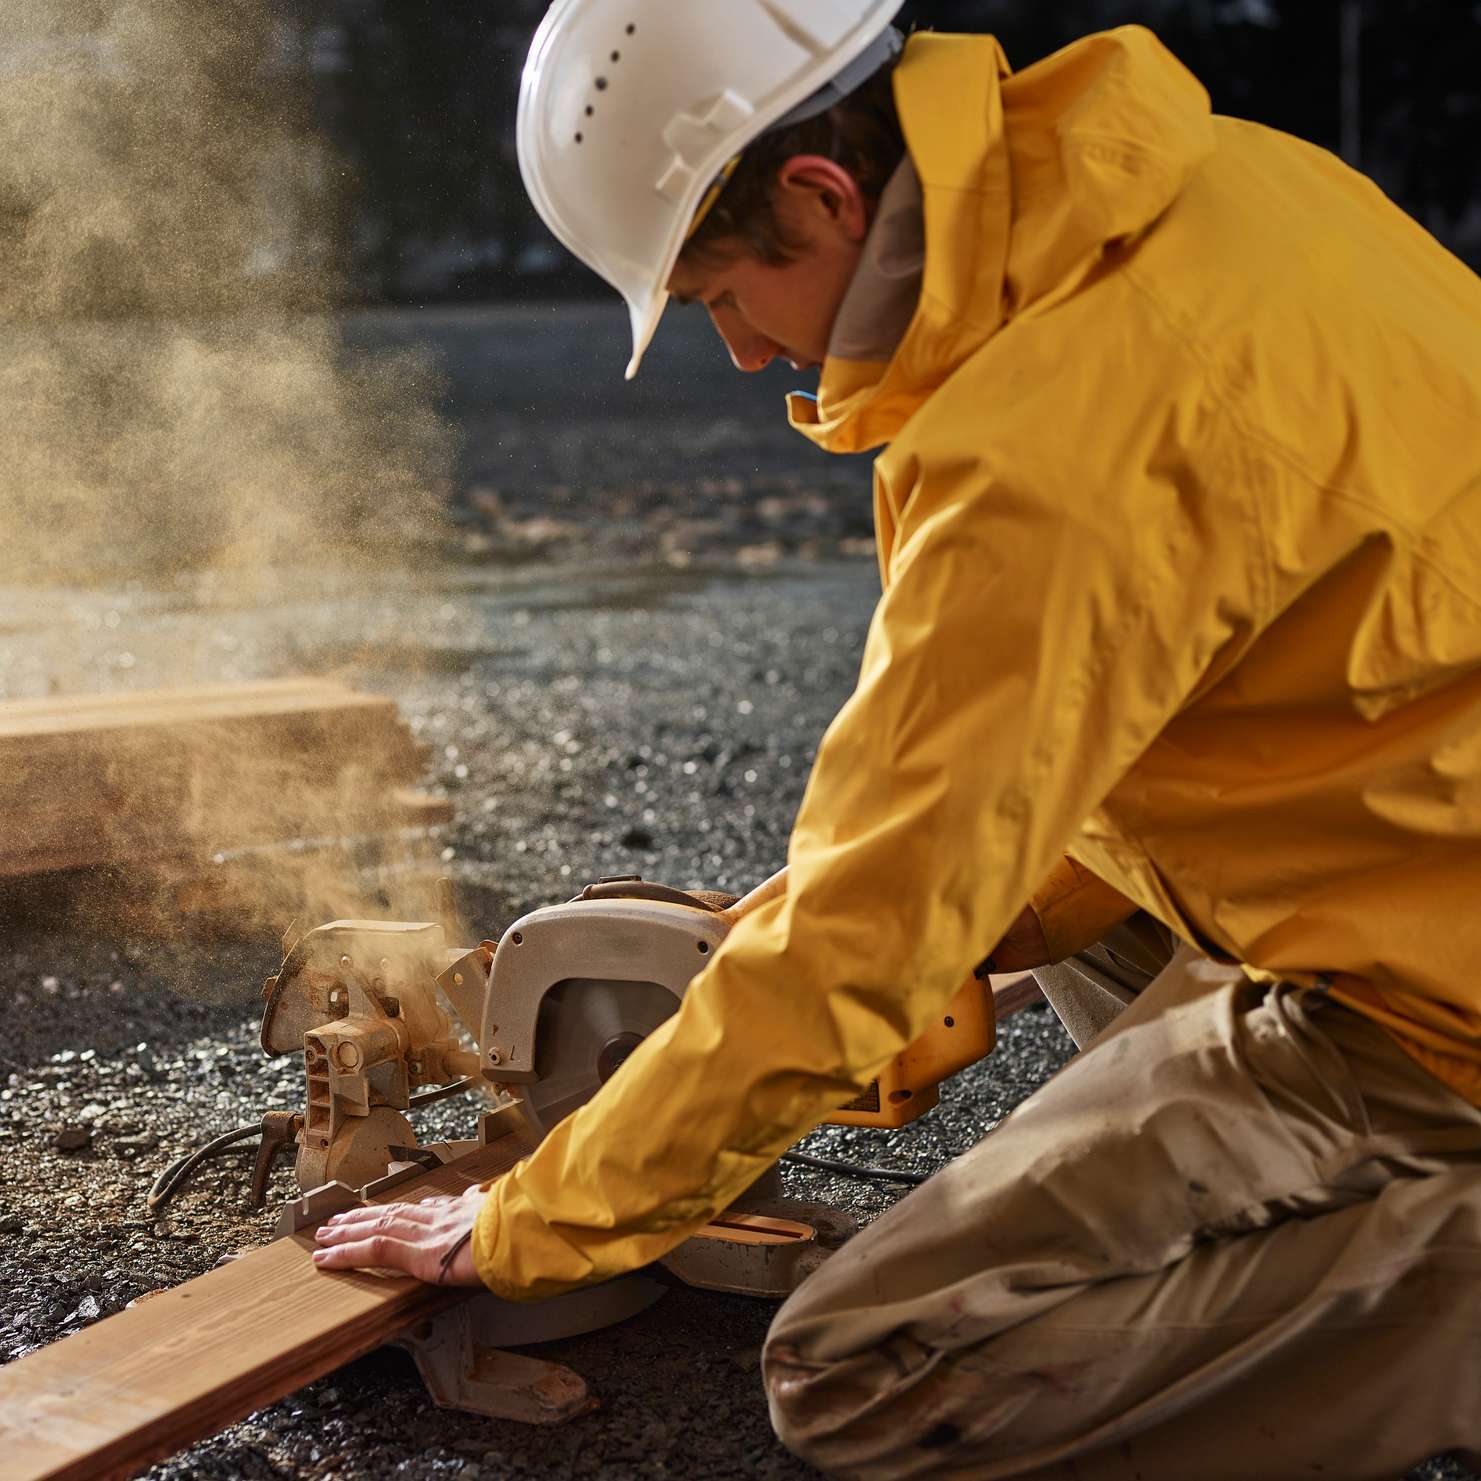 Bauleistungsversicherung - Bauarbeiter in gelber Jacke sägt Holzlatte mit Kreissäge